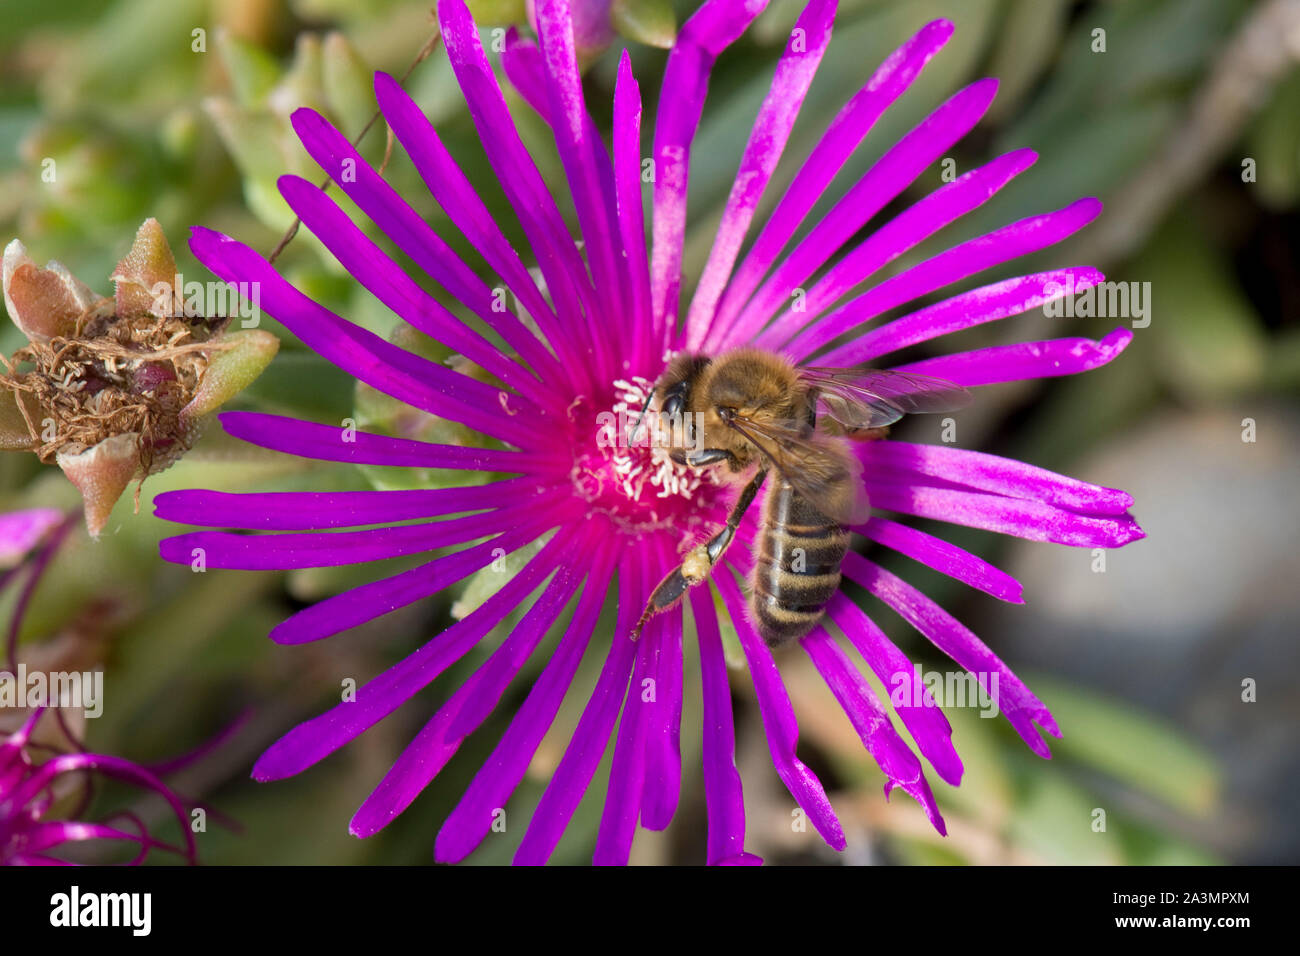 Une abeille (Apis mellifera) qui se nourrissent de la mauve rose fleur d'une usine à glace Mesembryanthemum crystallinum Banque D'Images